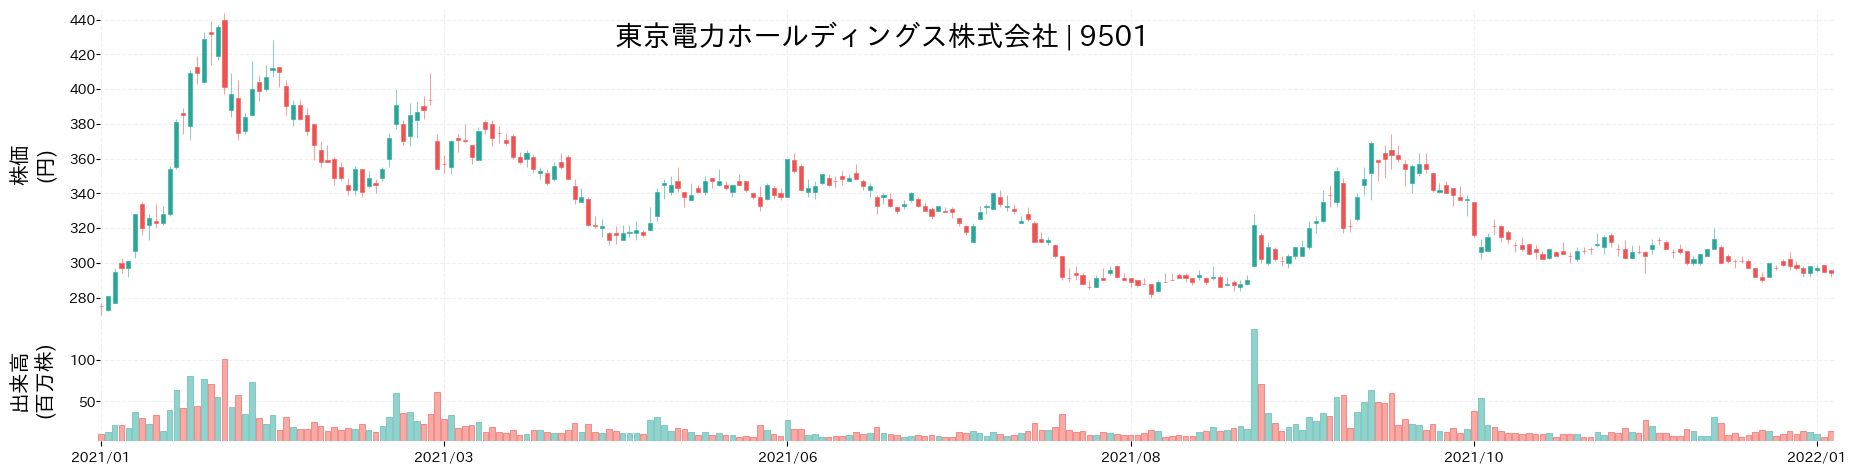 東京電力ホールディングスの株価推移(2021)